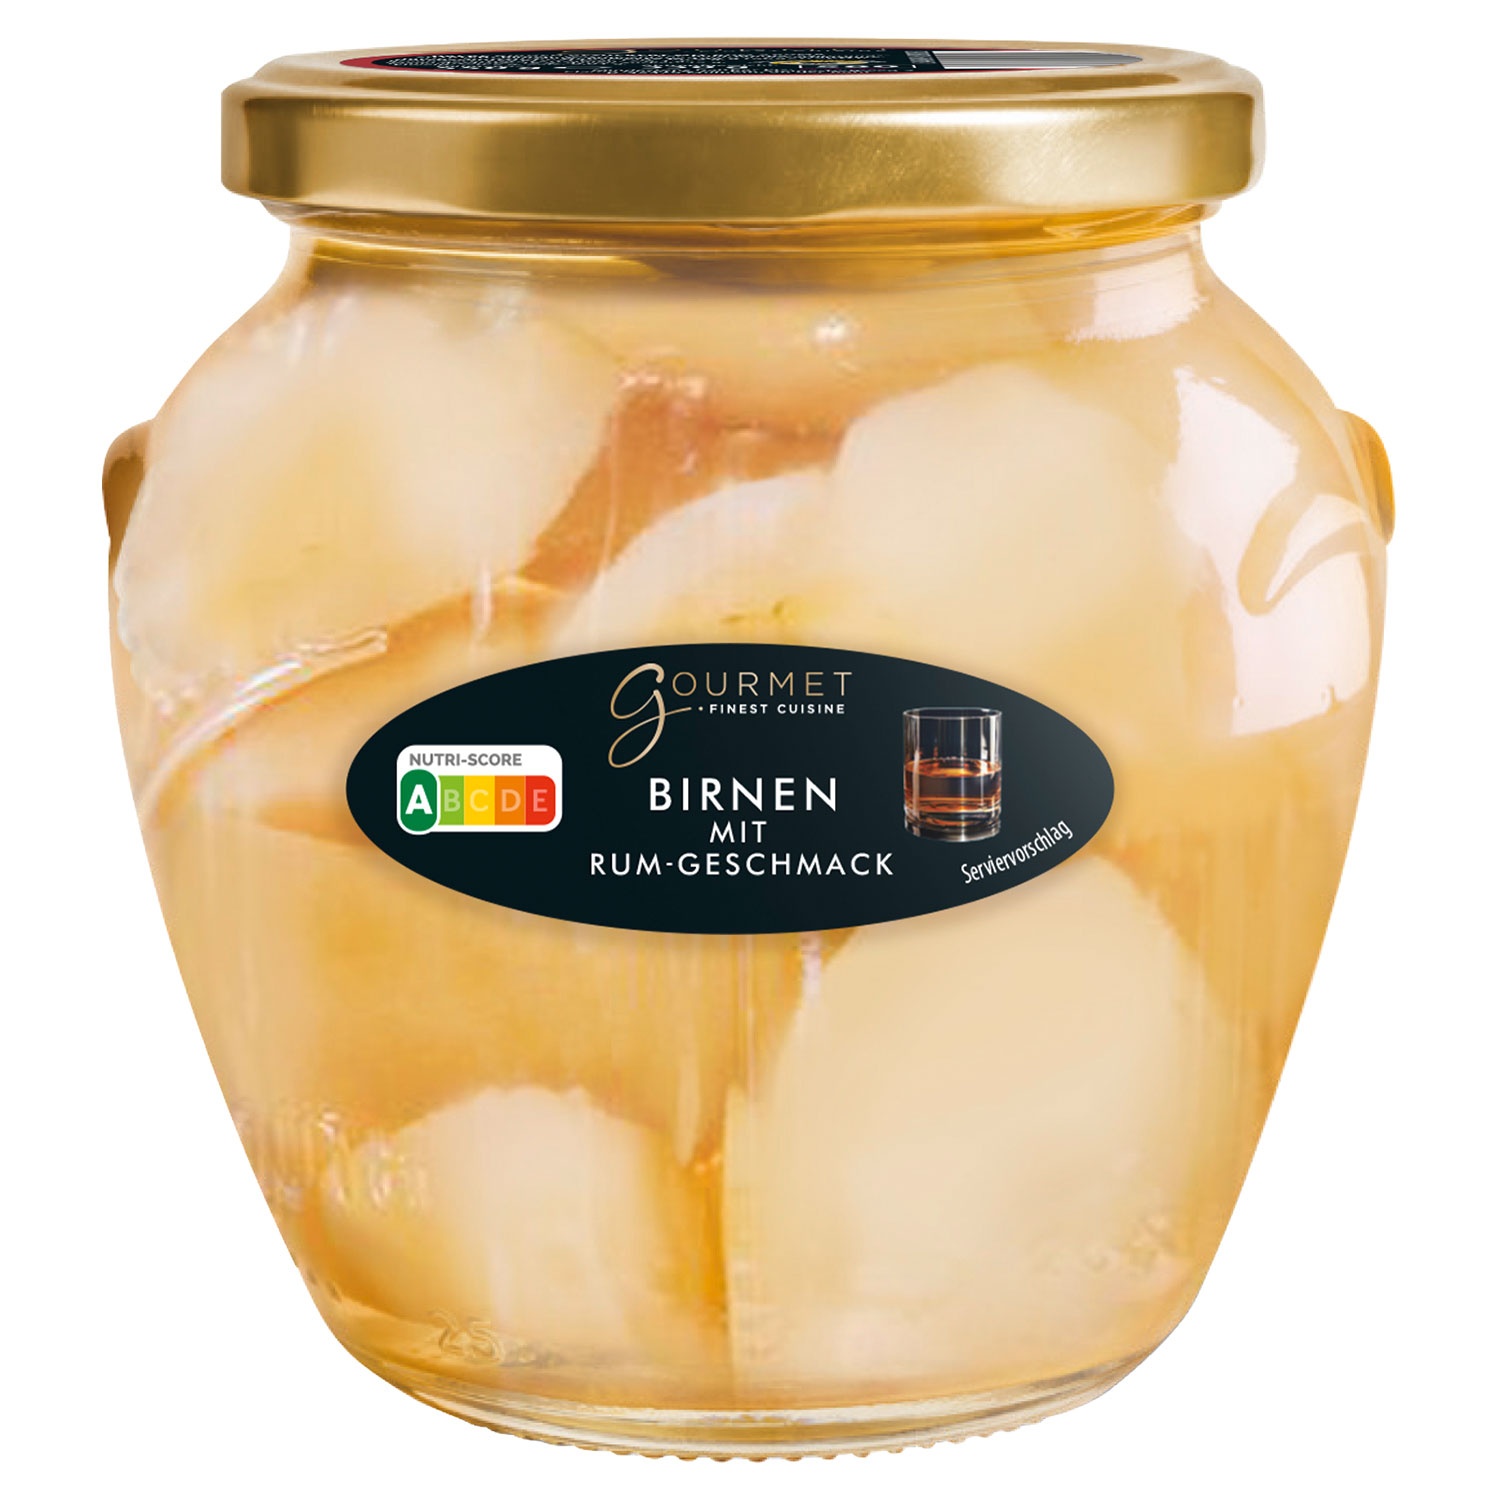 GOURMET FINEST CUISINE Pfirsiche oder Birnen 550 g